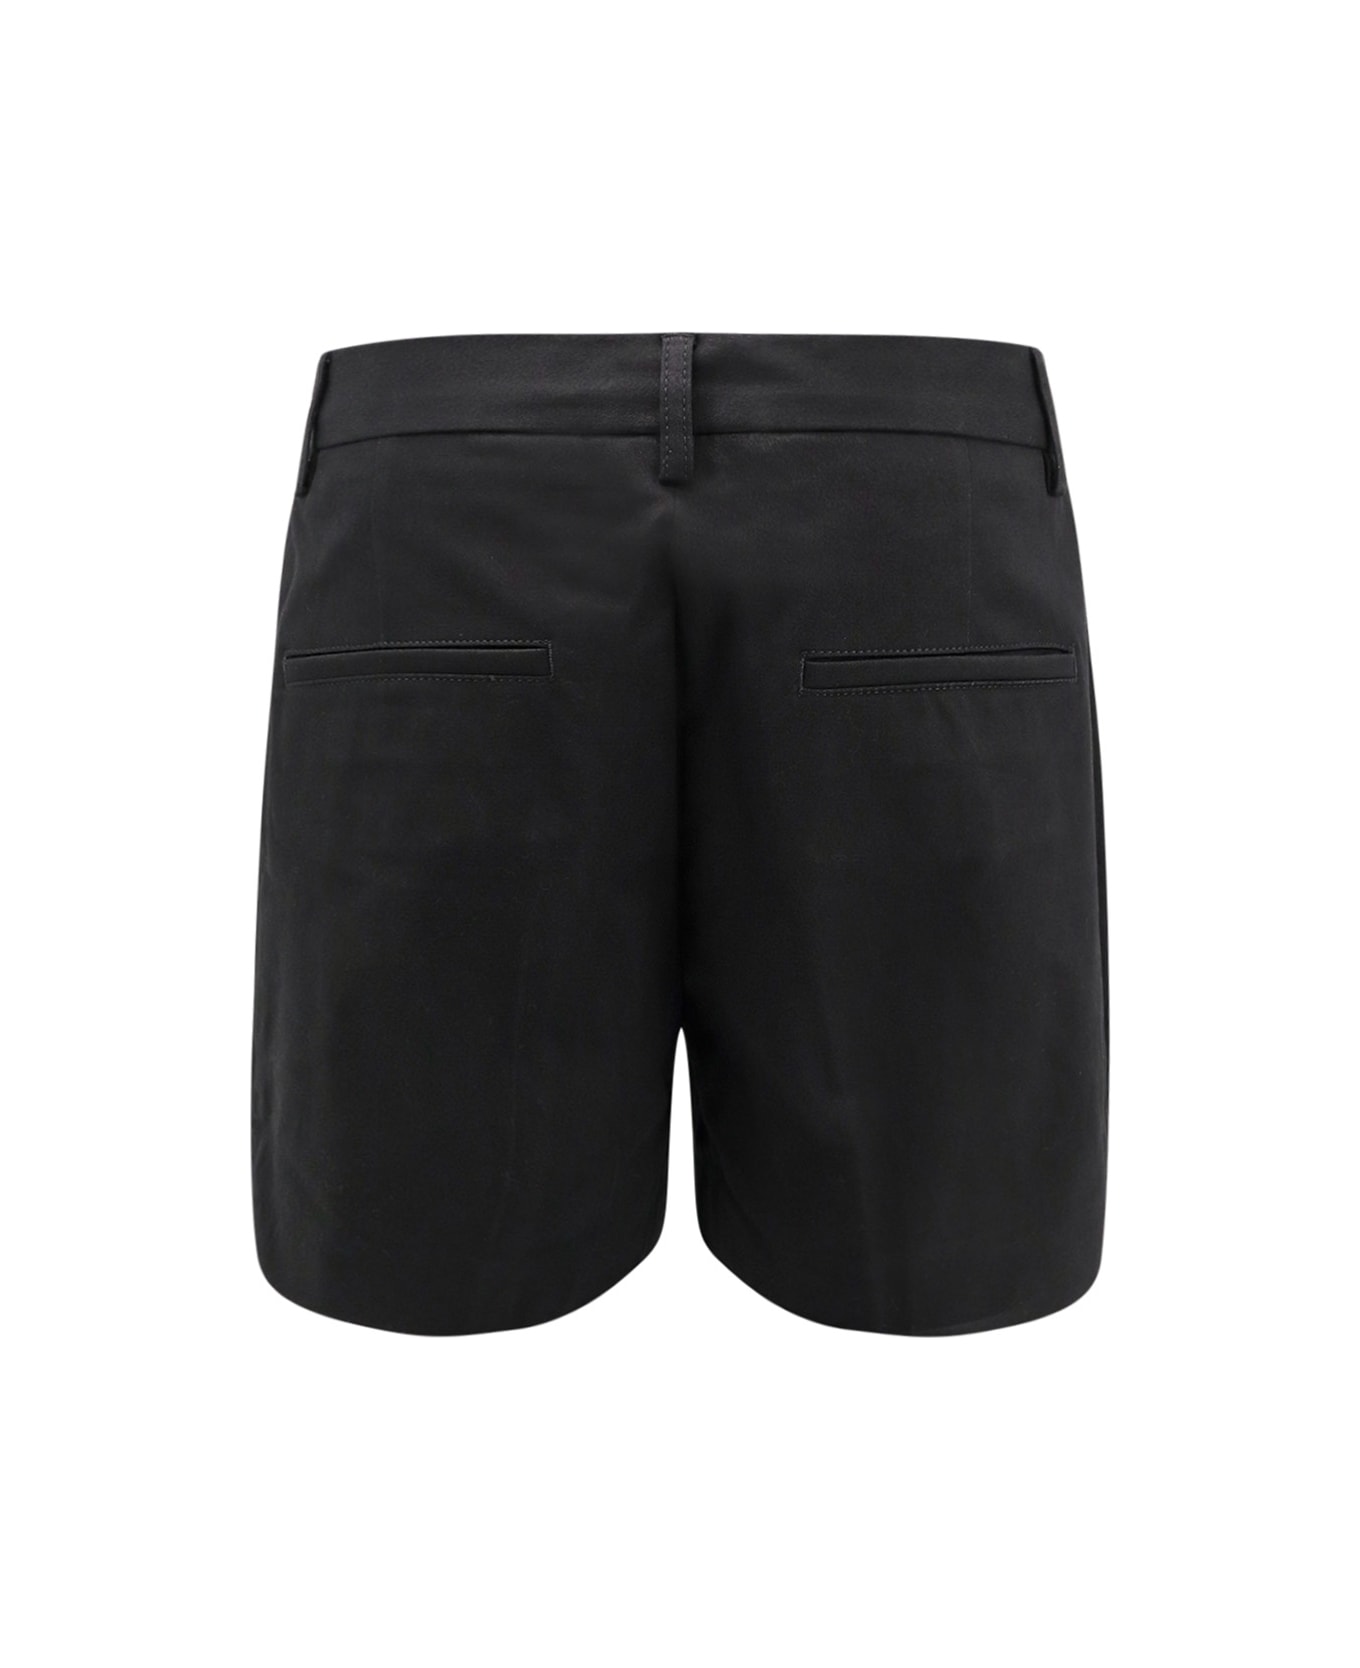 Closed Shorts - Black ショートパンツ